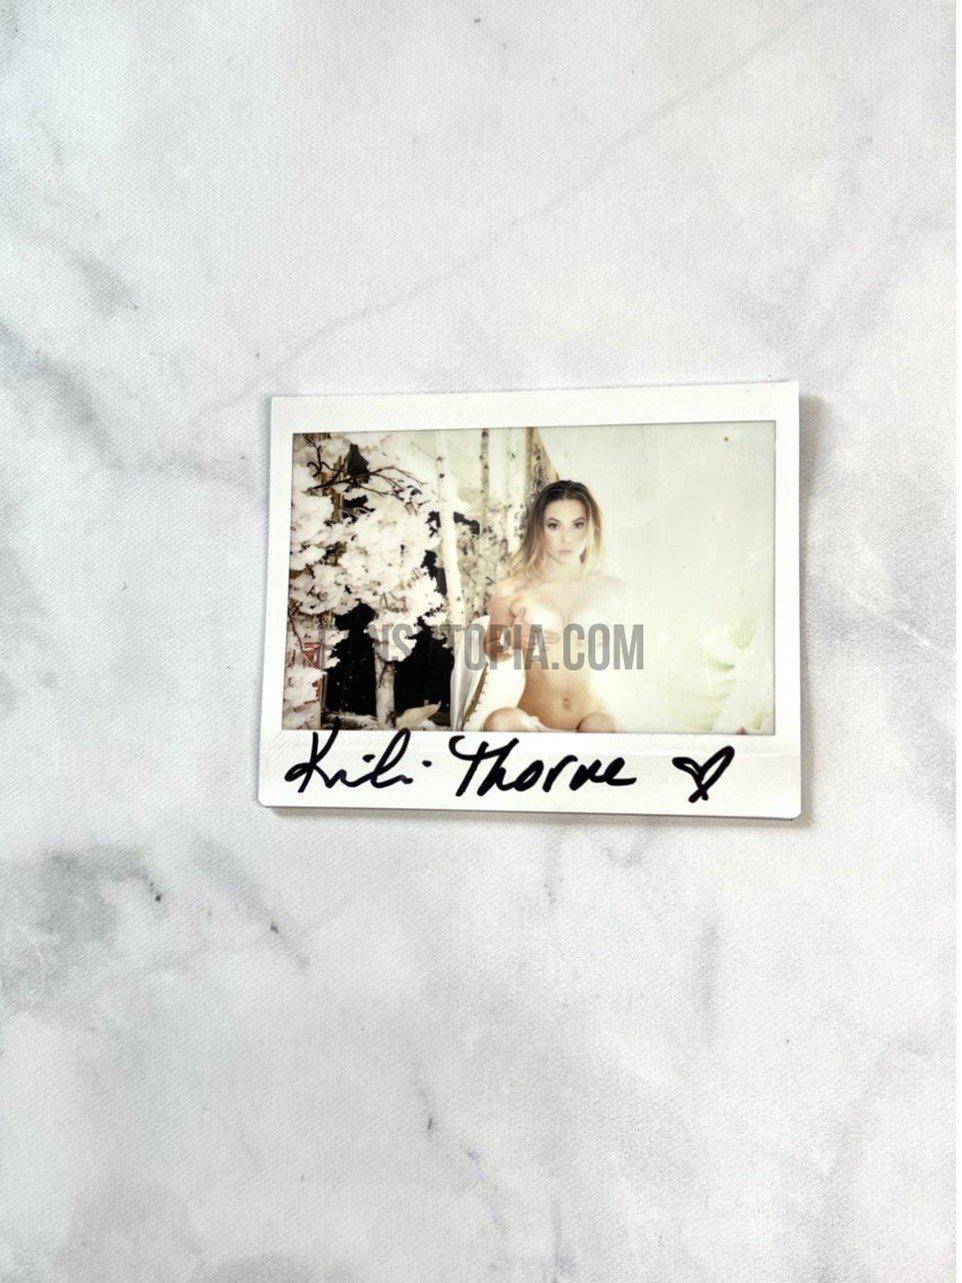 Kaili Thorne Nipple Tassel Polaroid - Fans Utopia